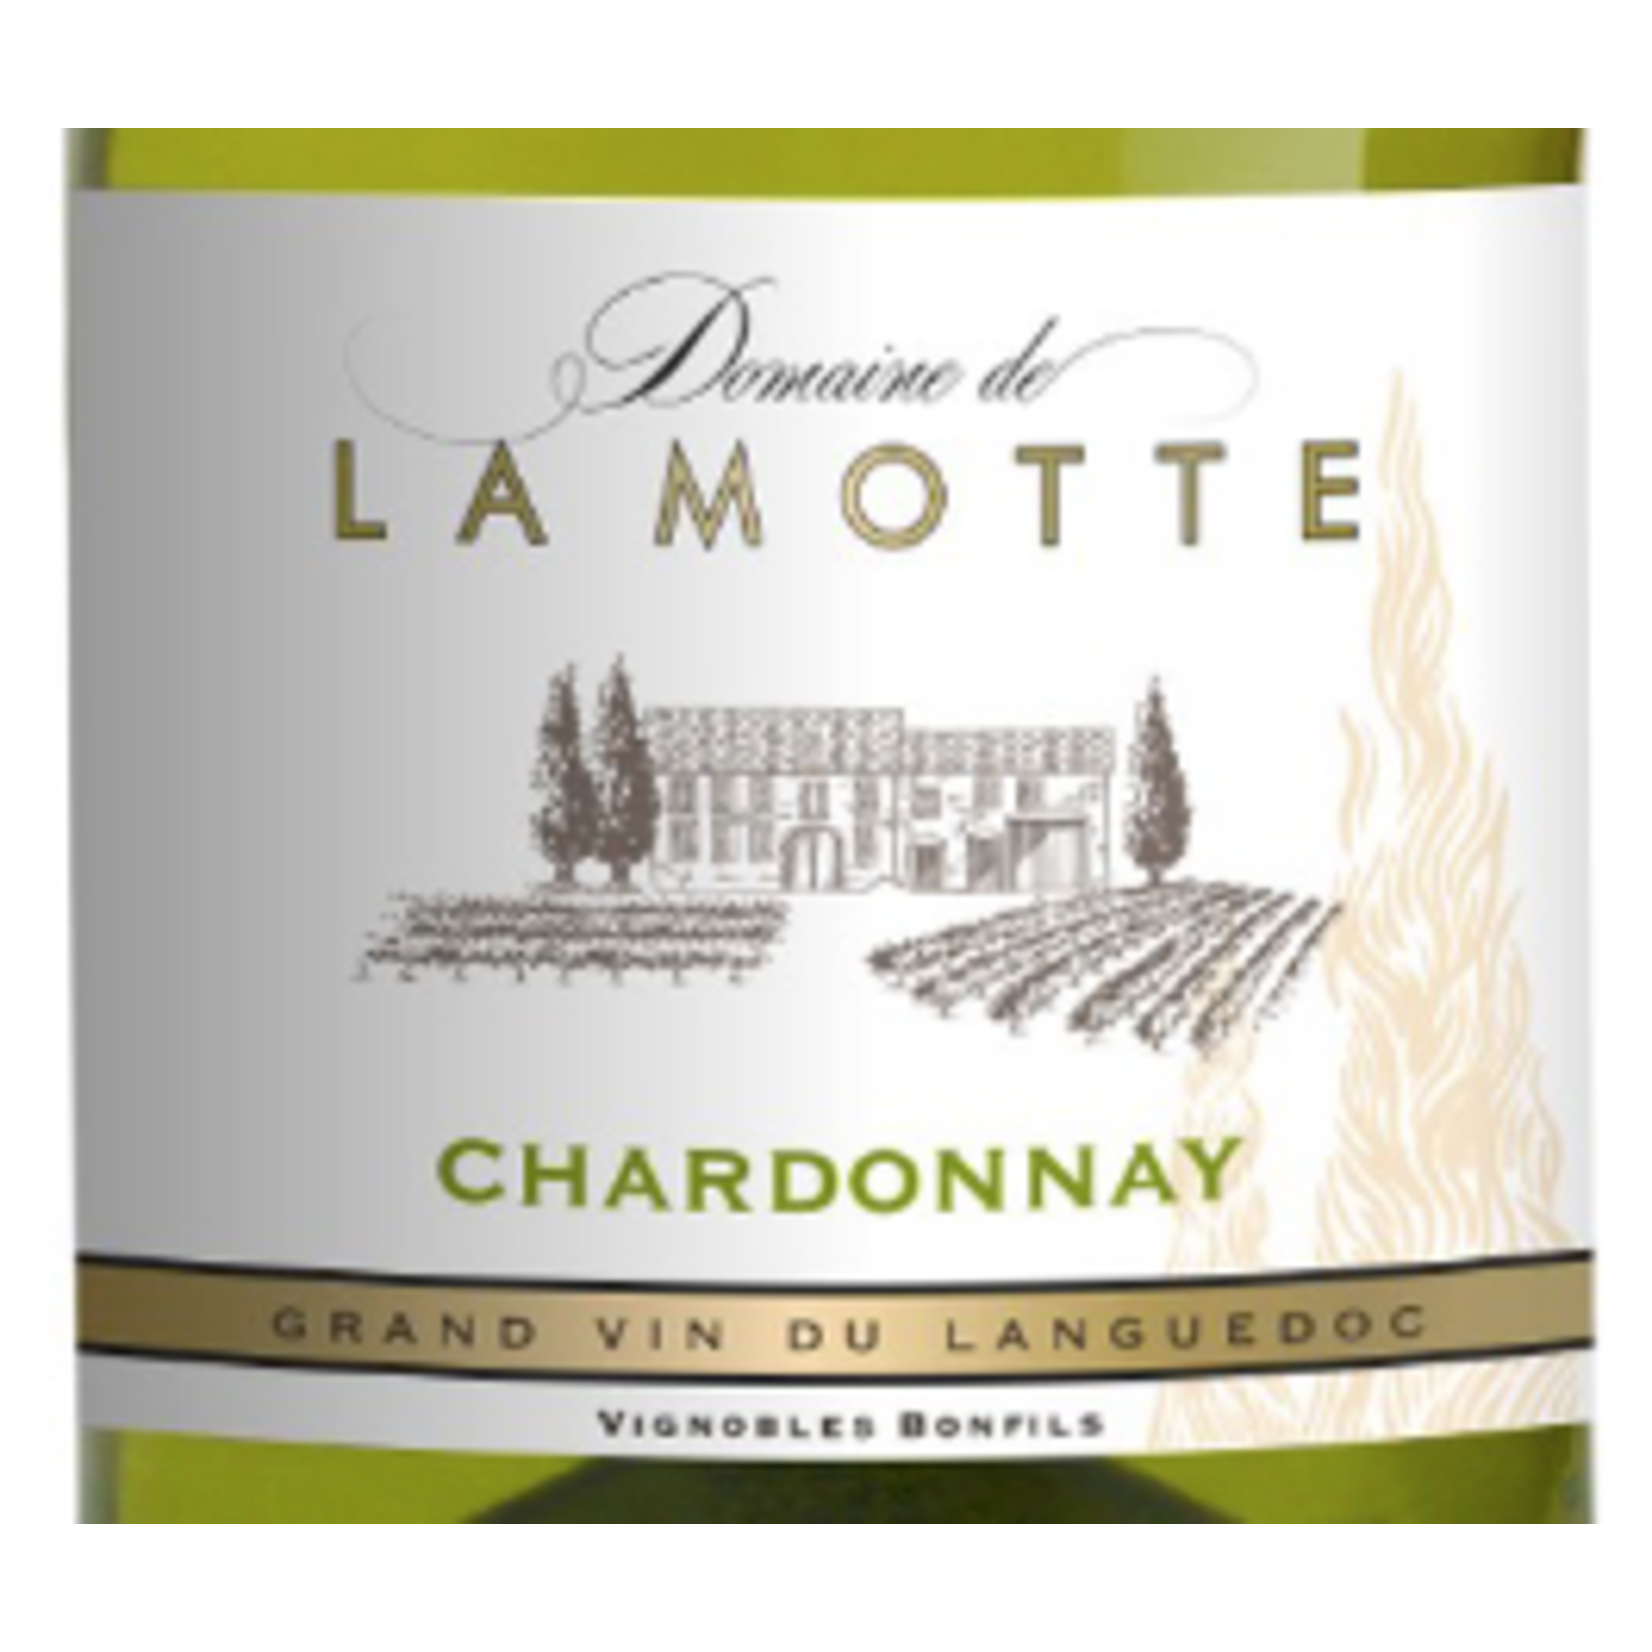 Vignobles Bonfils Domaine de La Motte Chardonnay 2021  France